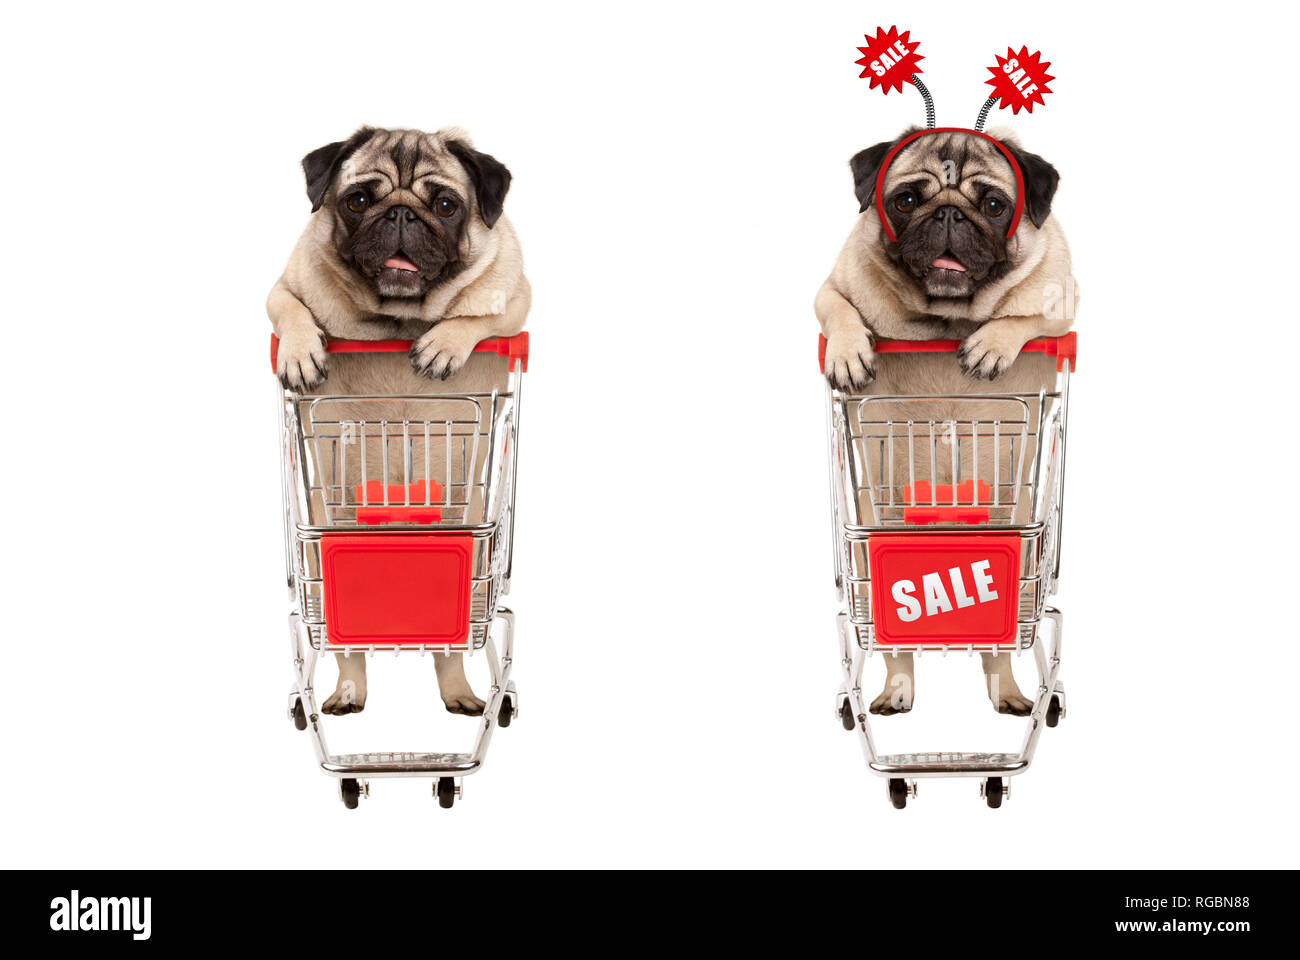 Fröhlich lächelnd Shopping mops Welpe Hund hinter dem roten Kabel metall Warenkorb mit Verkauf Zeichen, auf weißem Hintergrund Stockfoto